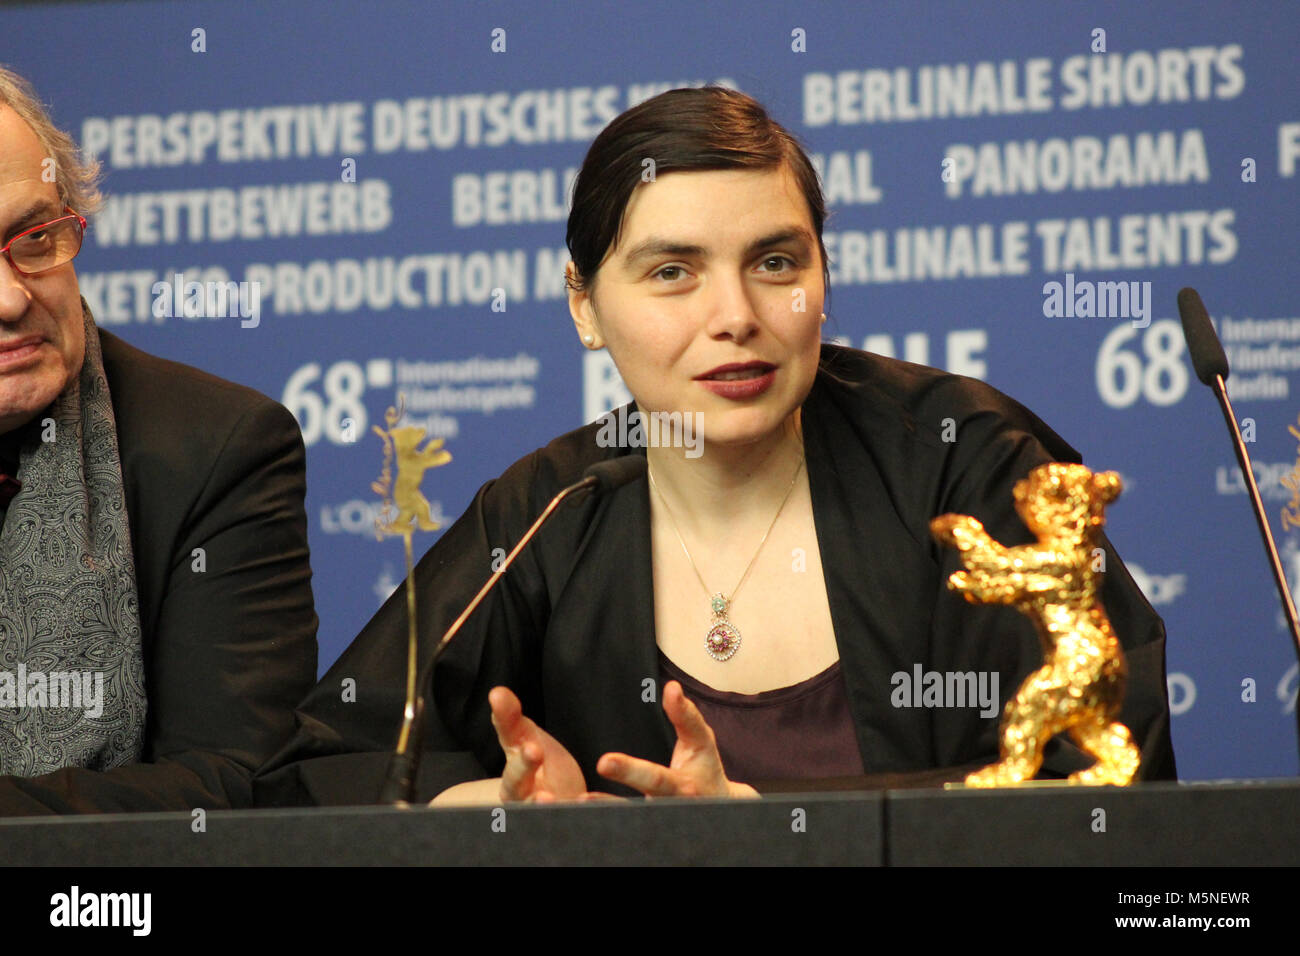 68ª edición de la Berlinale, ganador del Oso de Oro, el Goldener Bär Mejor película: "No me toques" por Adina Pintilie, Berlin, Alemania. 24 de febrero de 2018. Conferencia de prensa Foto de stock